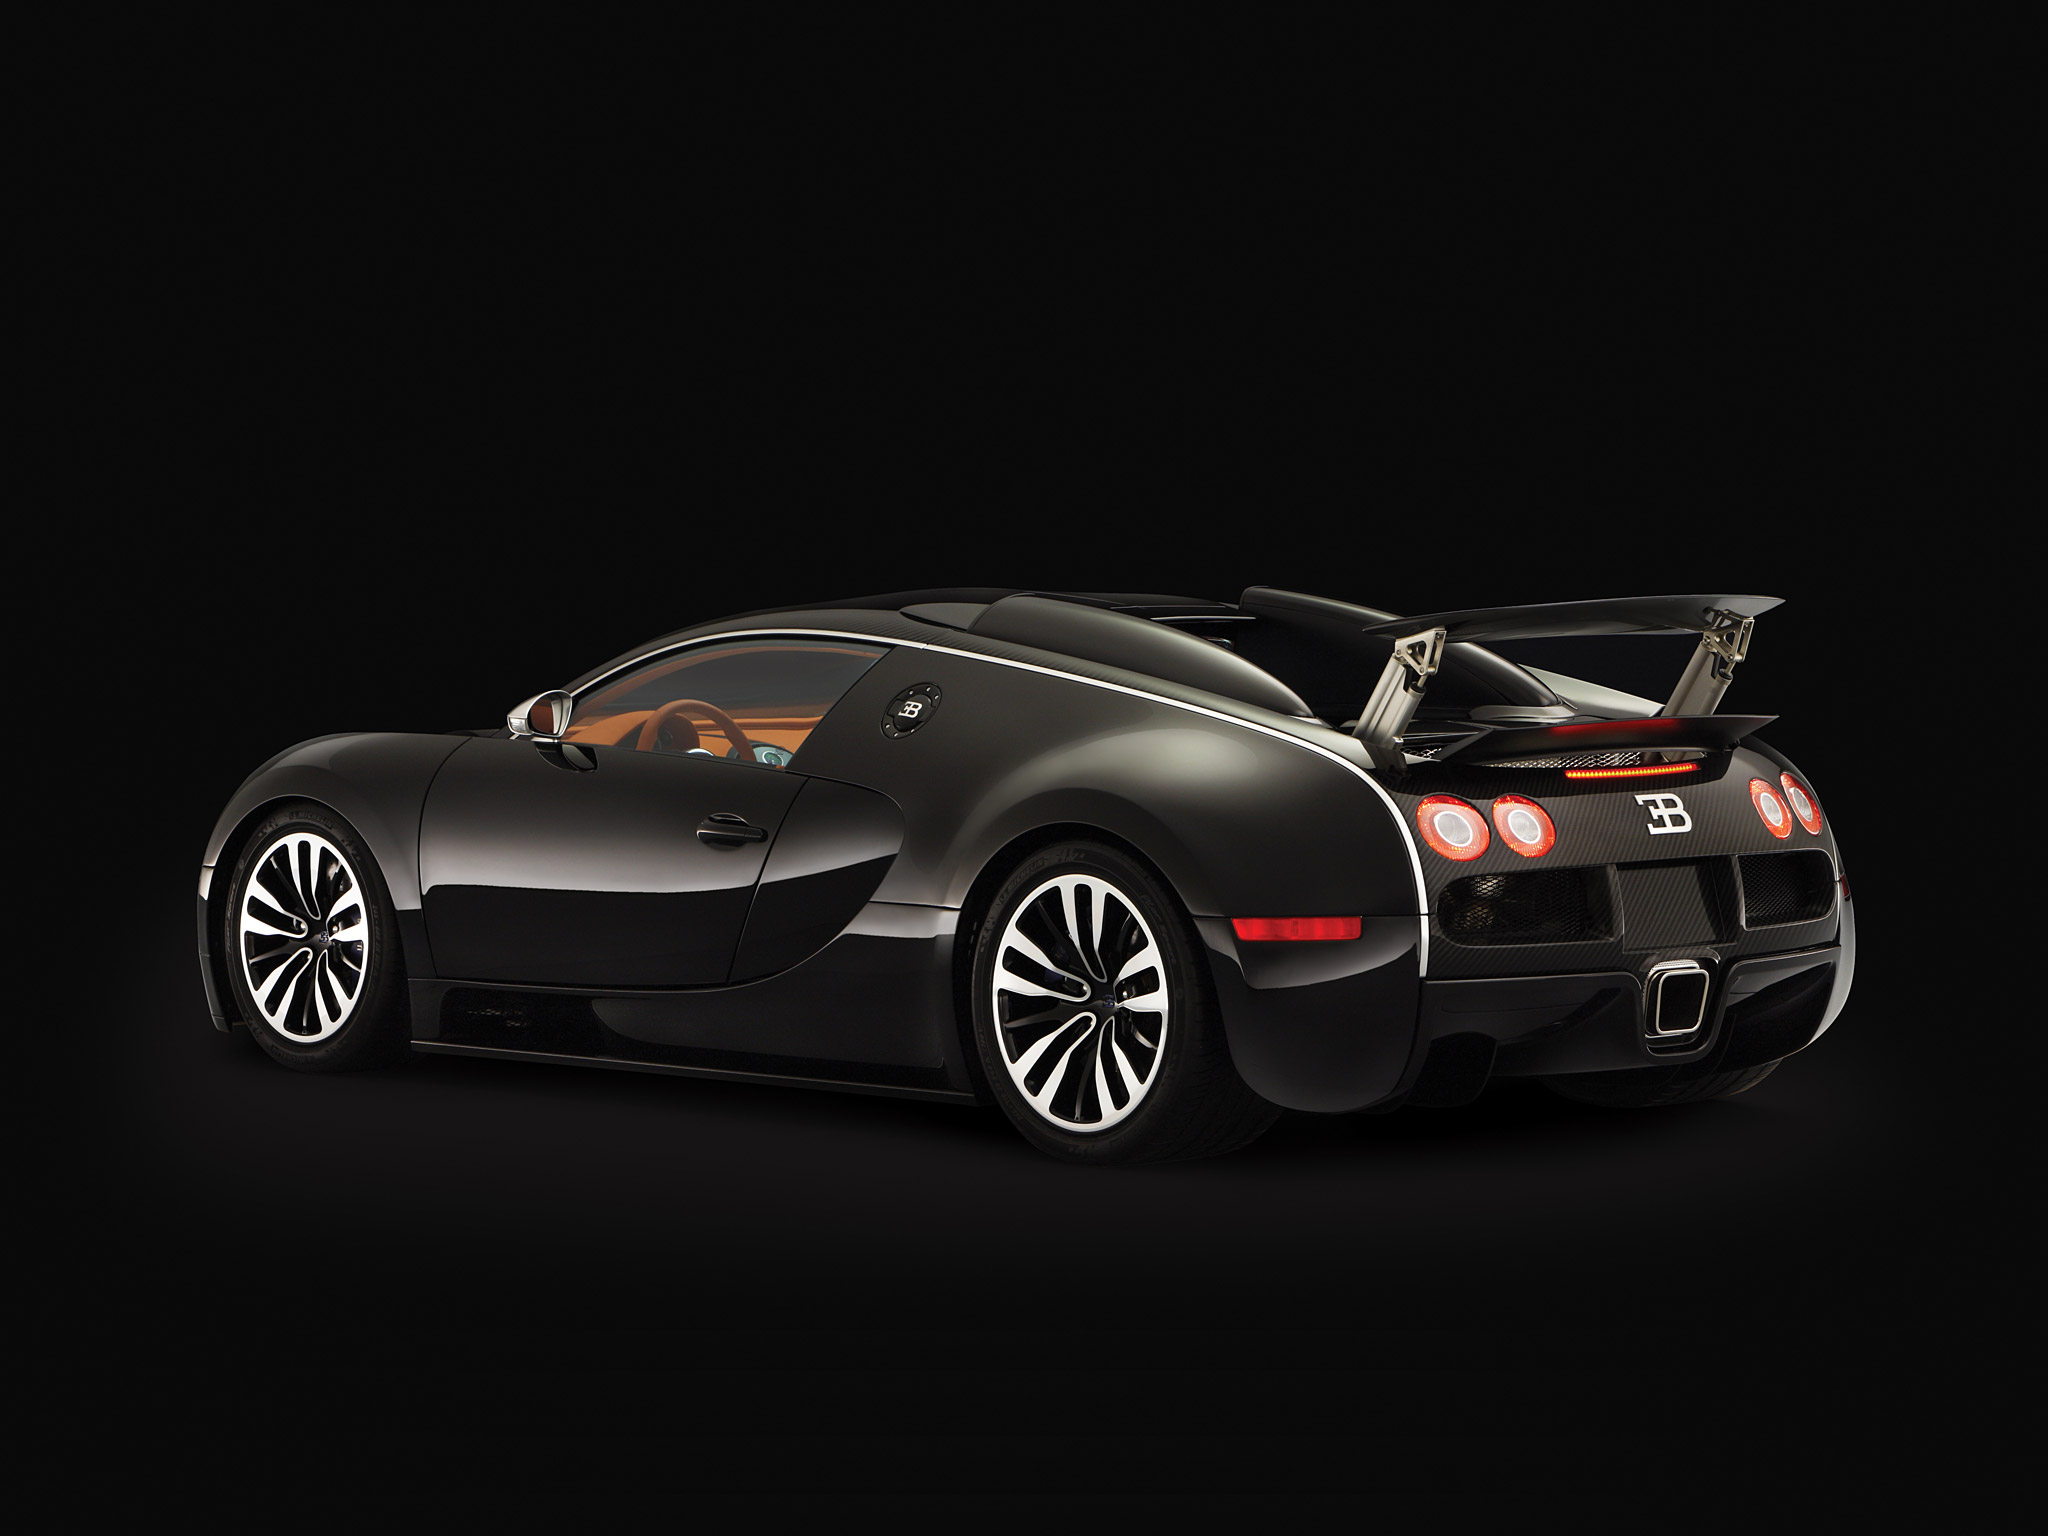  2008 Bugatti Veyron Sang Noir Wallpaper.